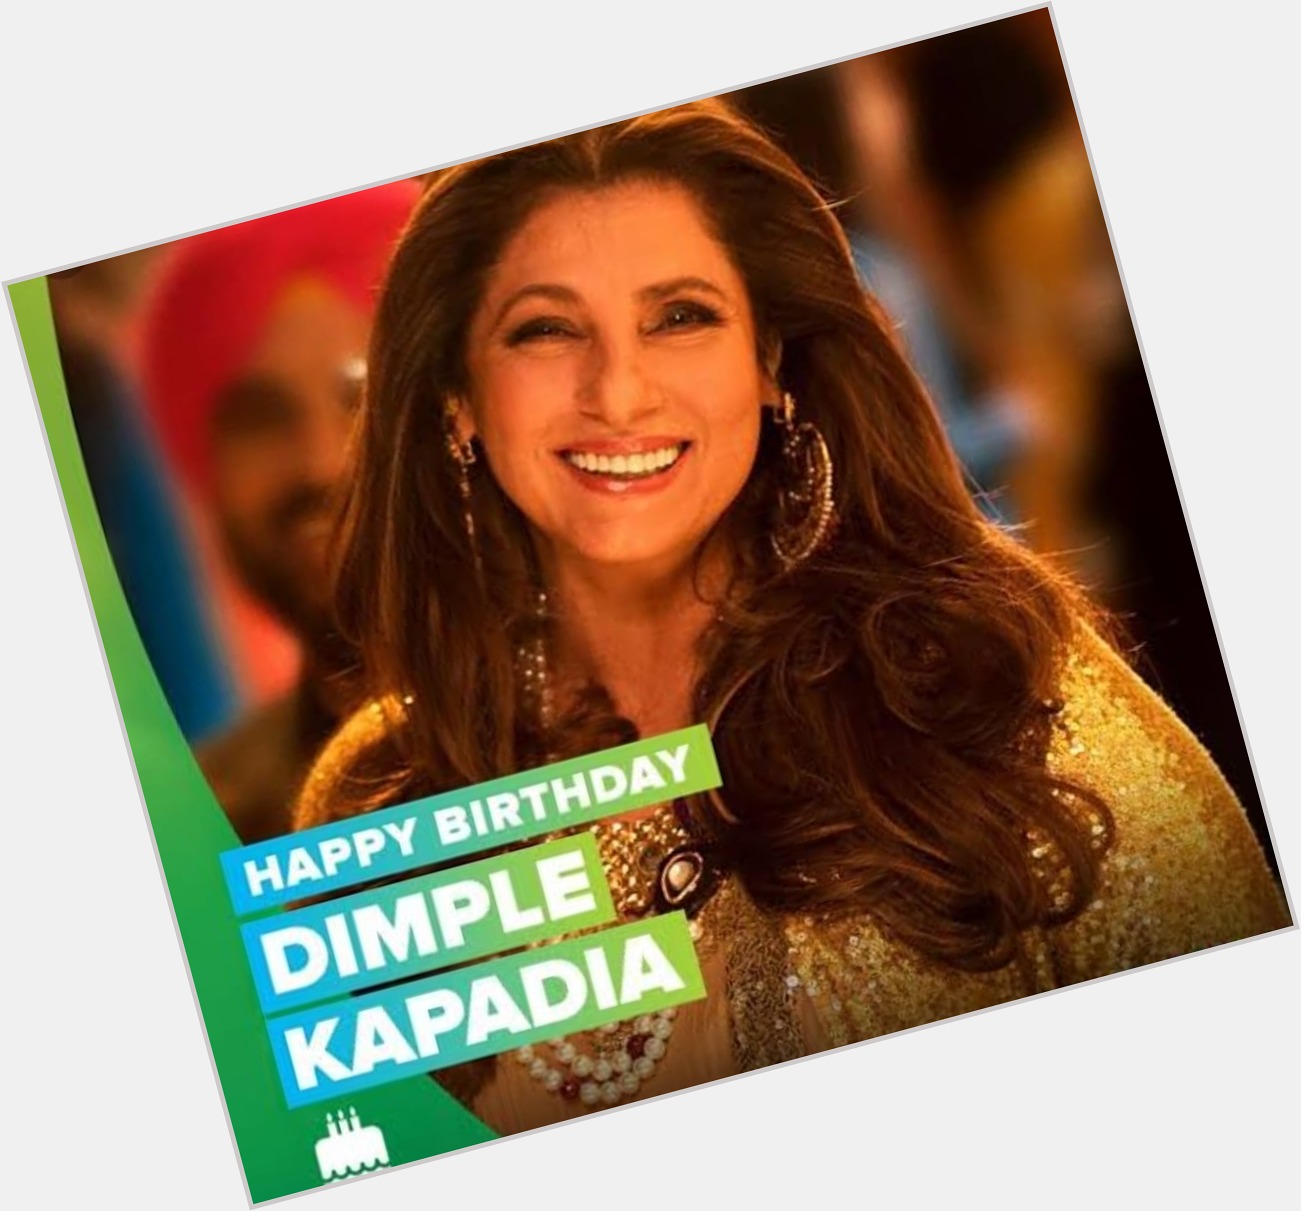 Happy Birthday Dimple Kapadia.  